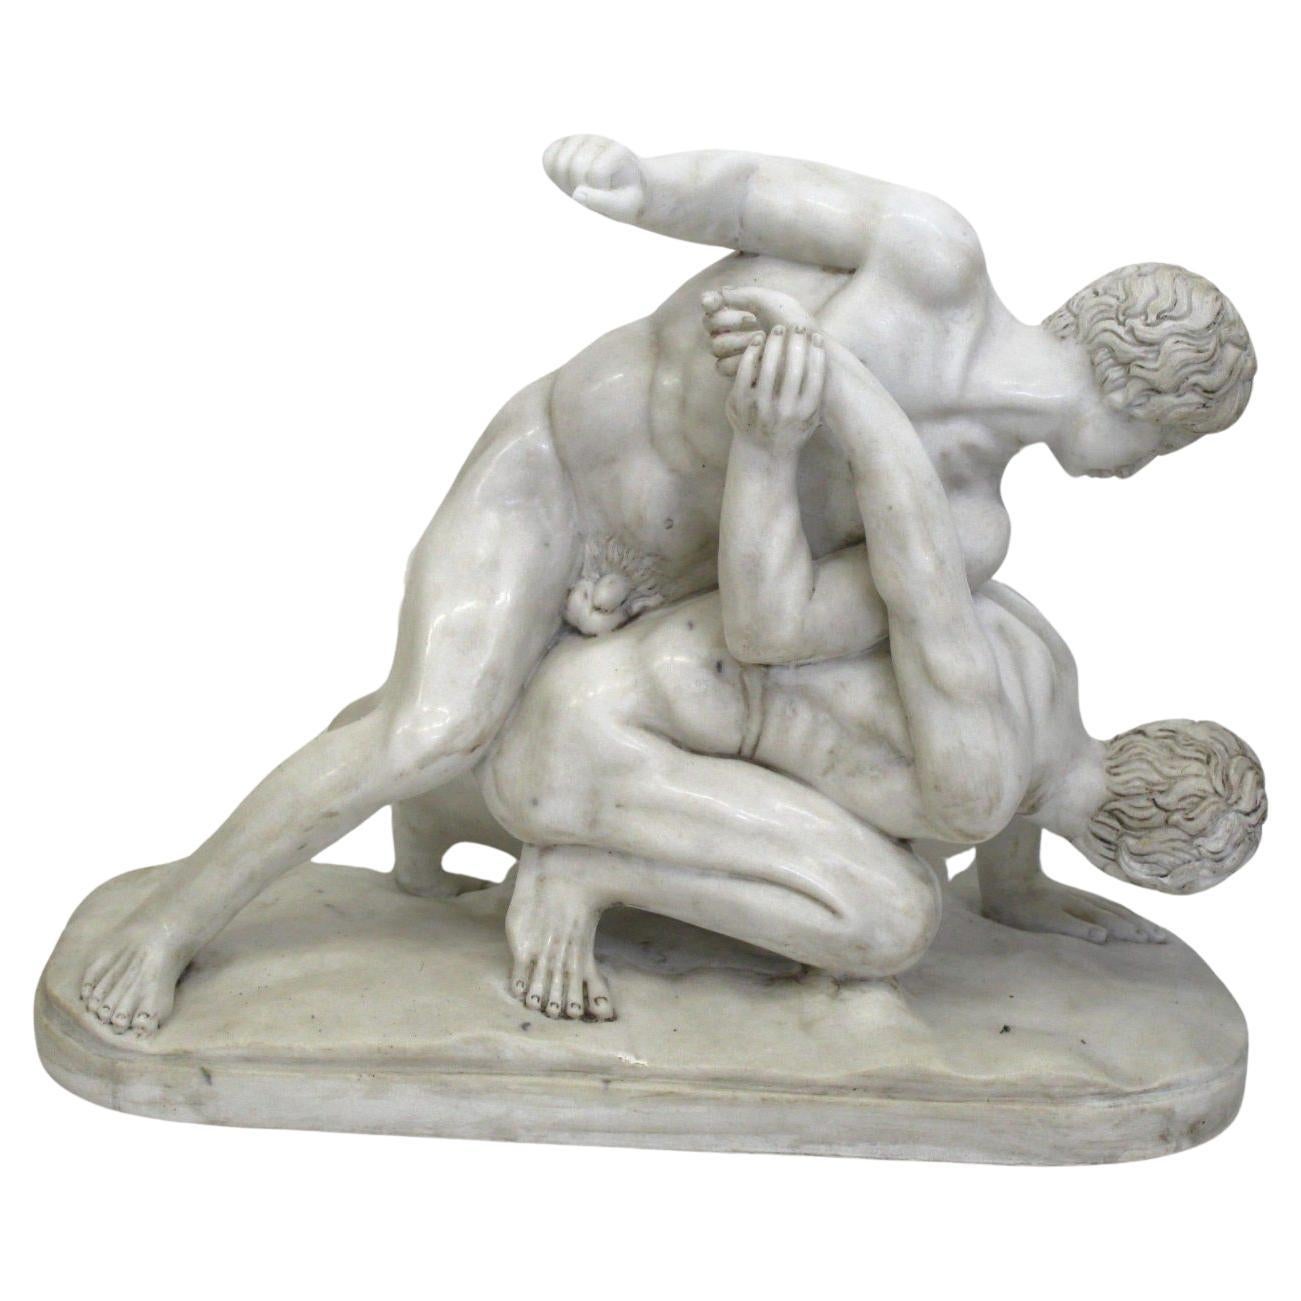 Skulptur von Ringern, aus weißem Marmor